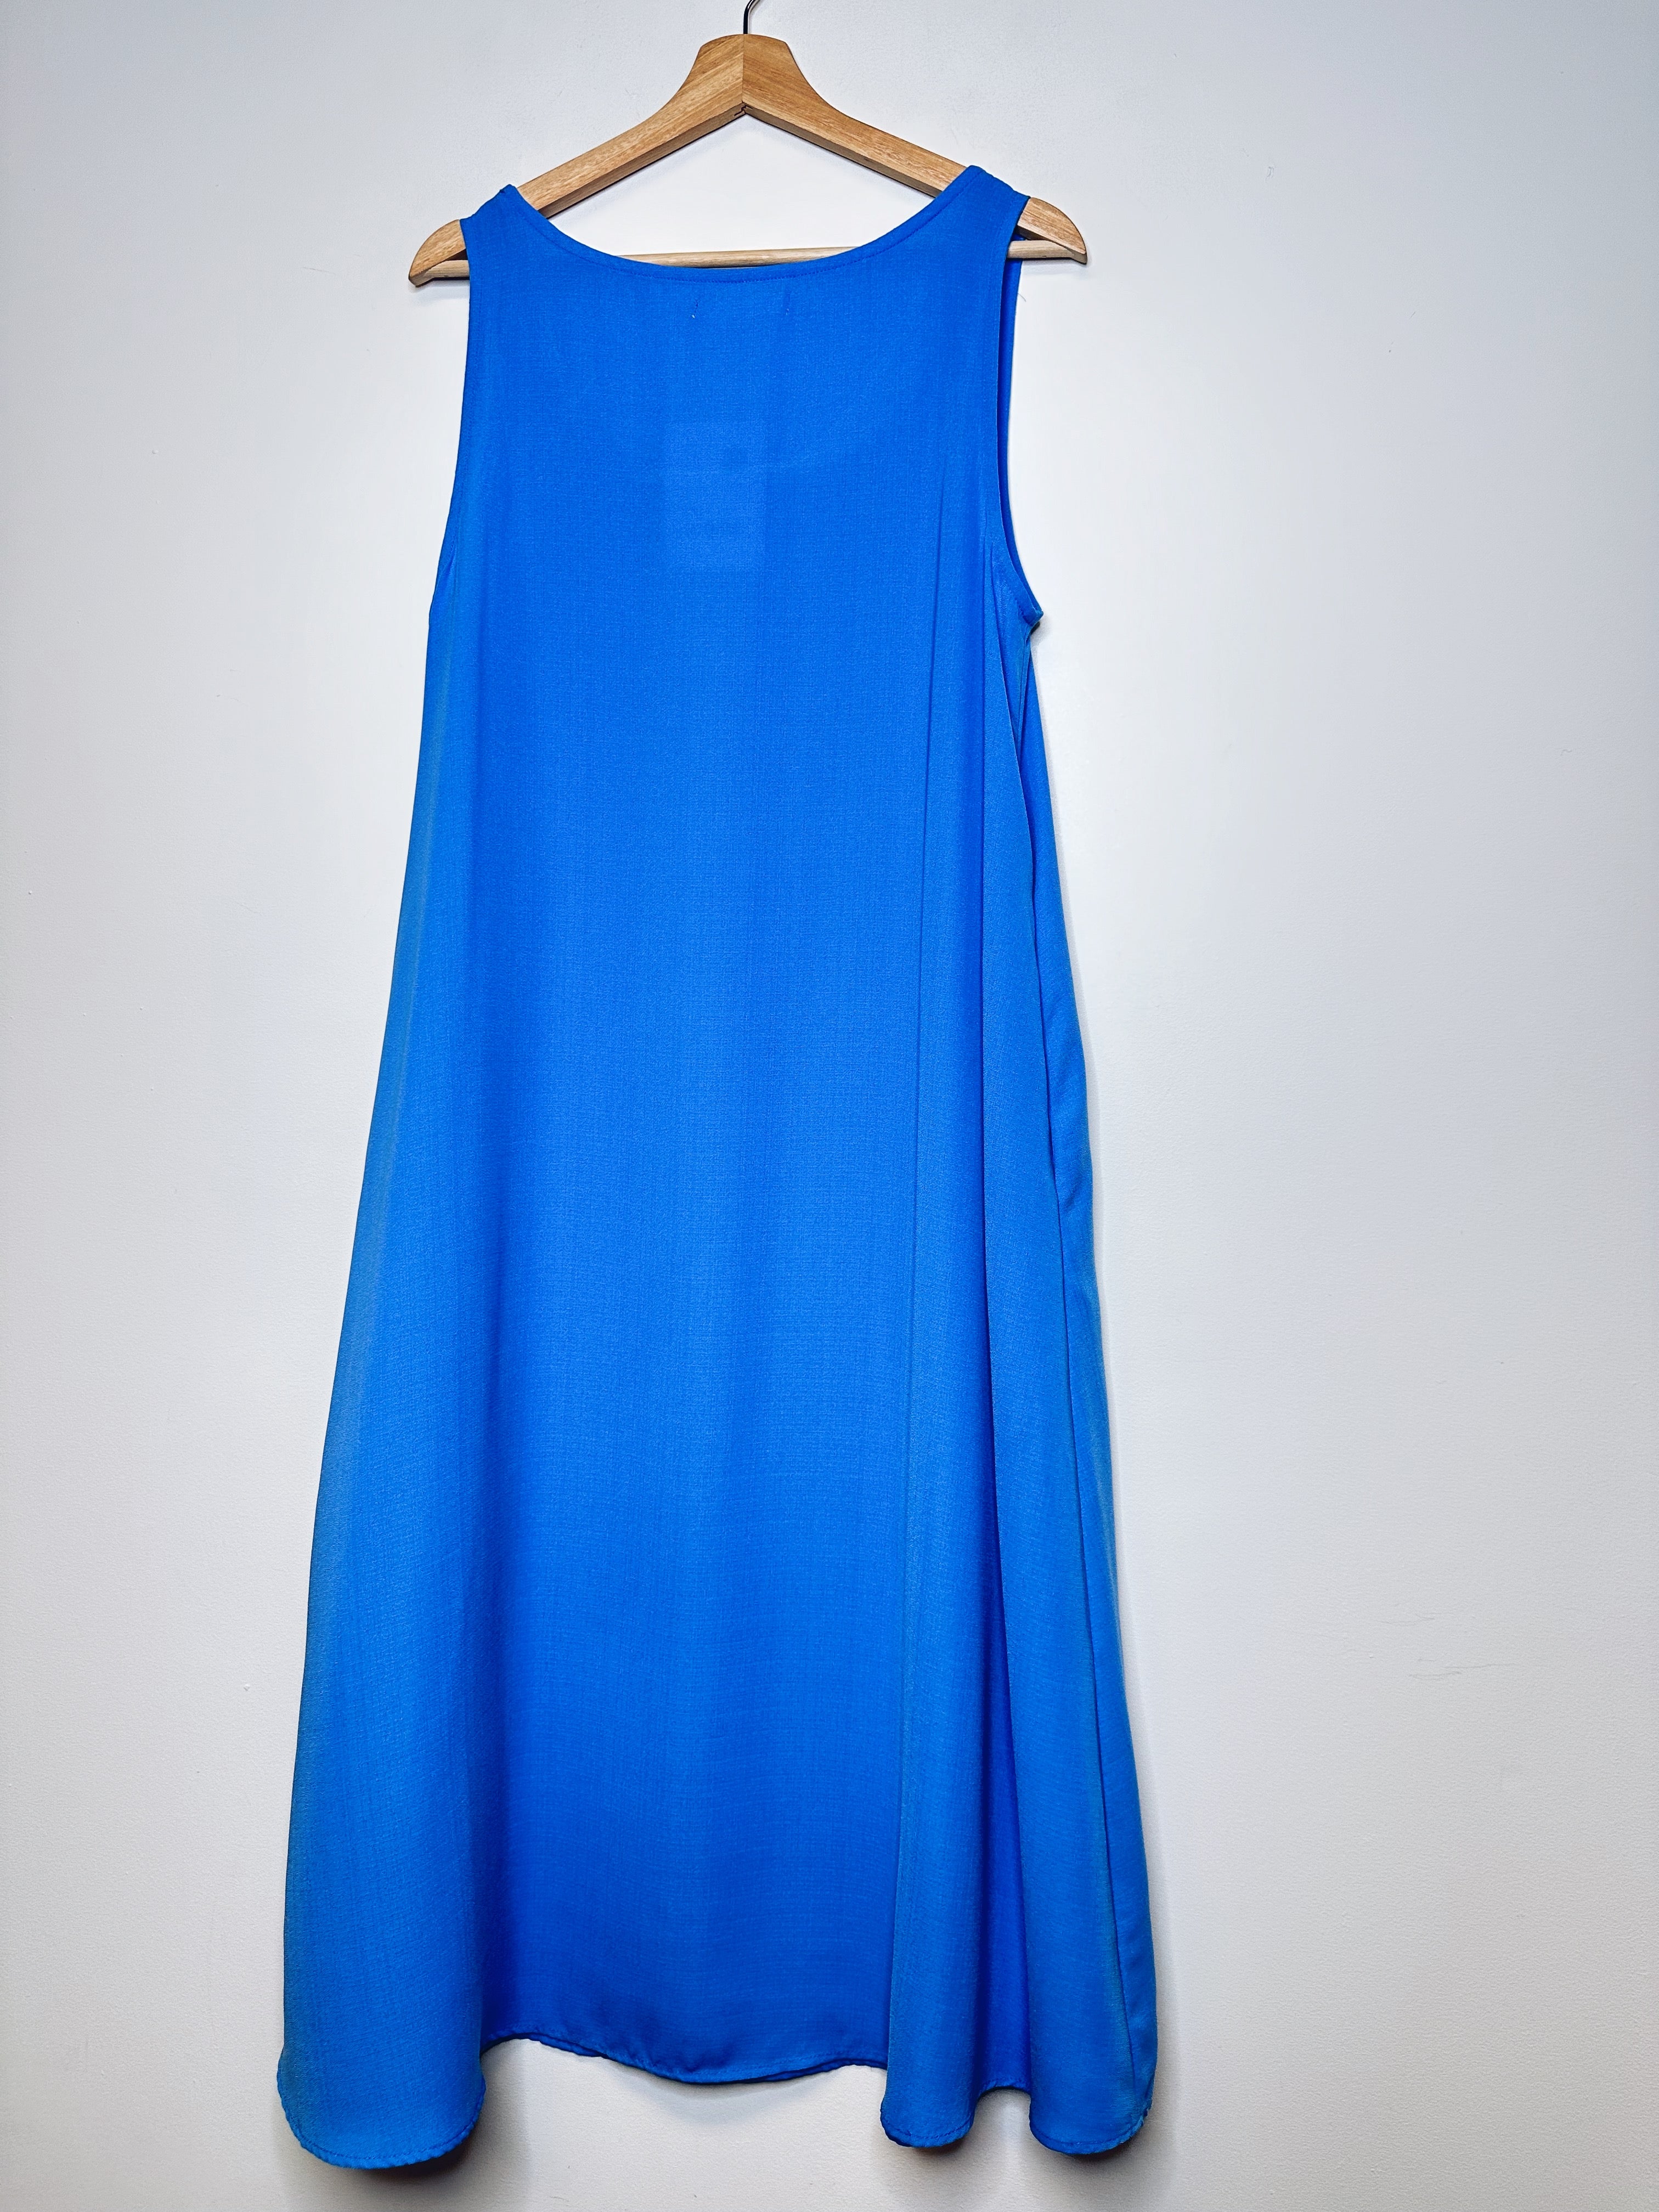 Oak + Fort Blue Midi Dress - M - NEW